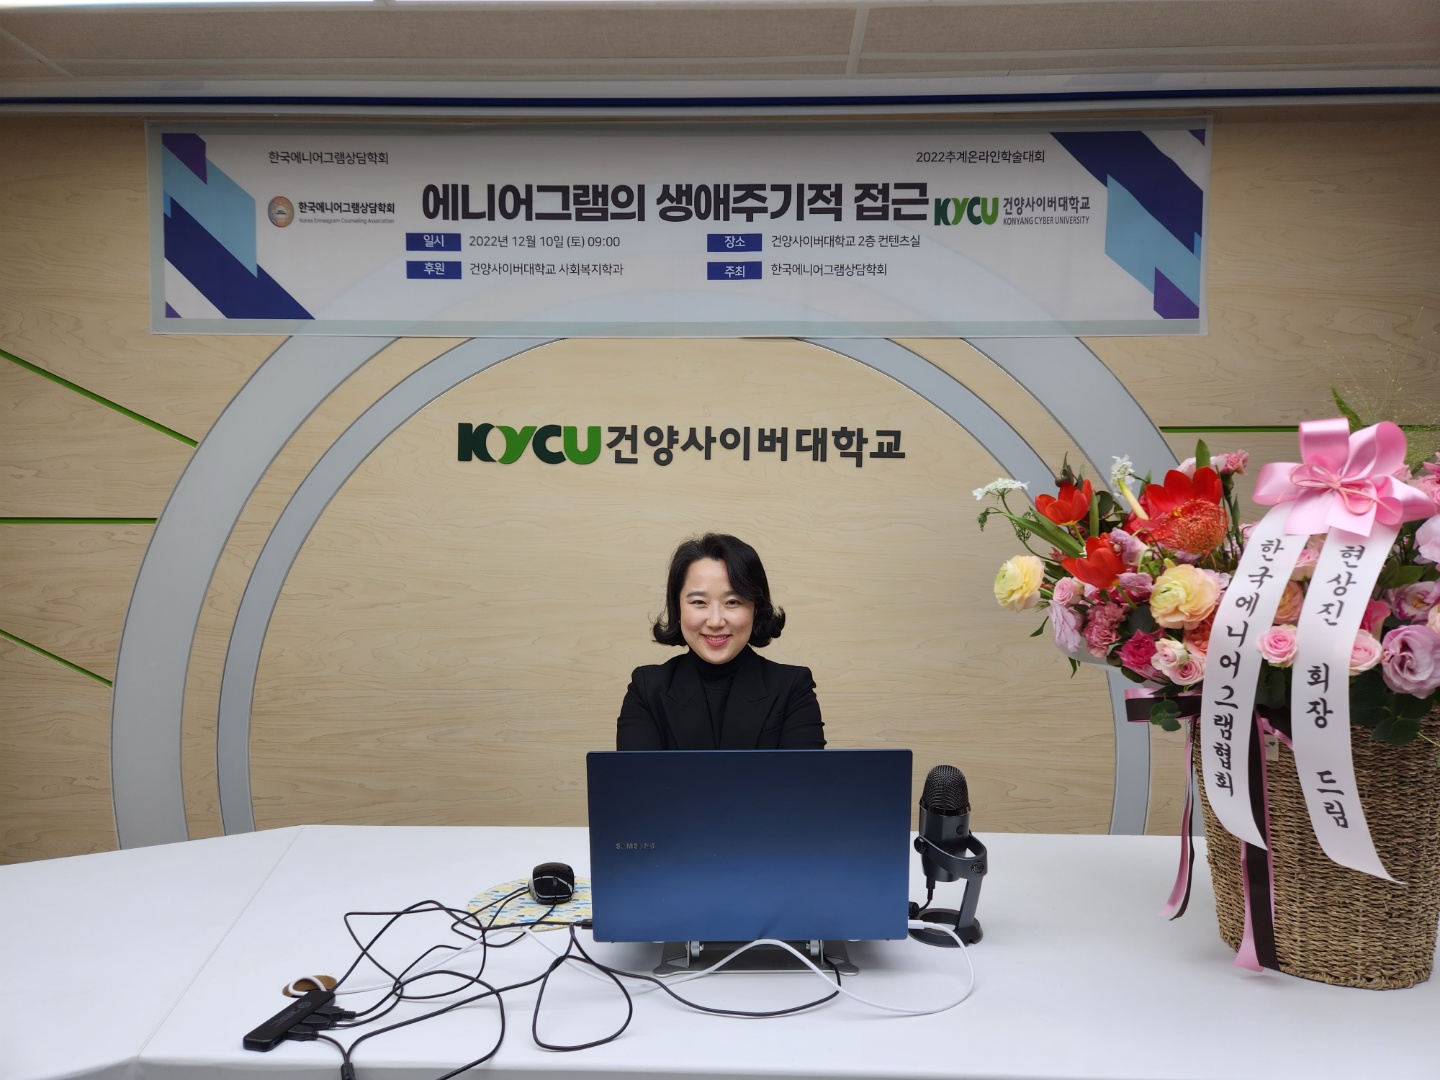 배나래교수 건양사이버대에서 열린  한국에니어그램상담학회 주제발표(에니어그램과 인생의 의미)